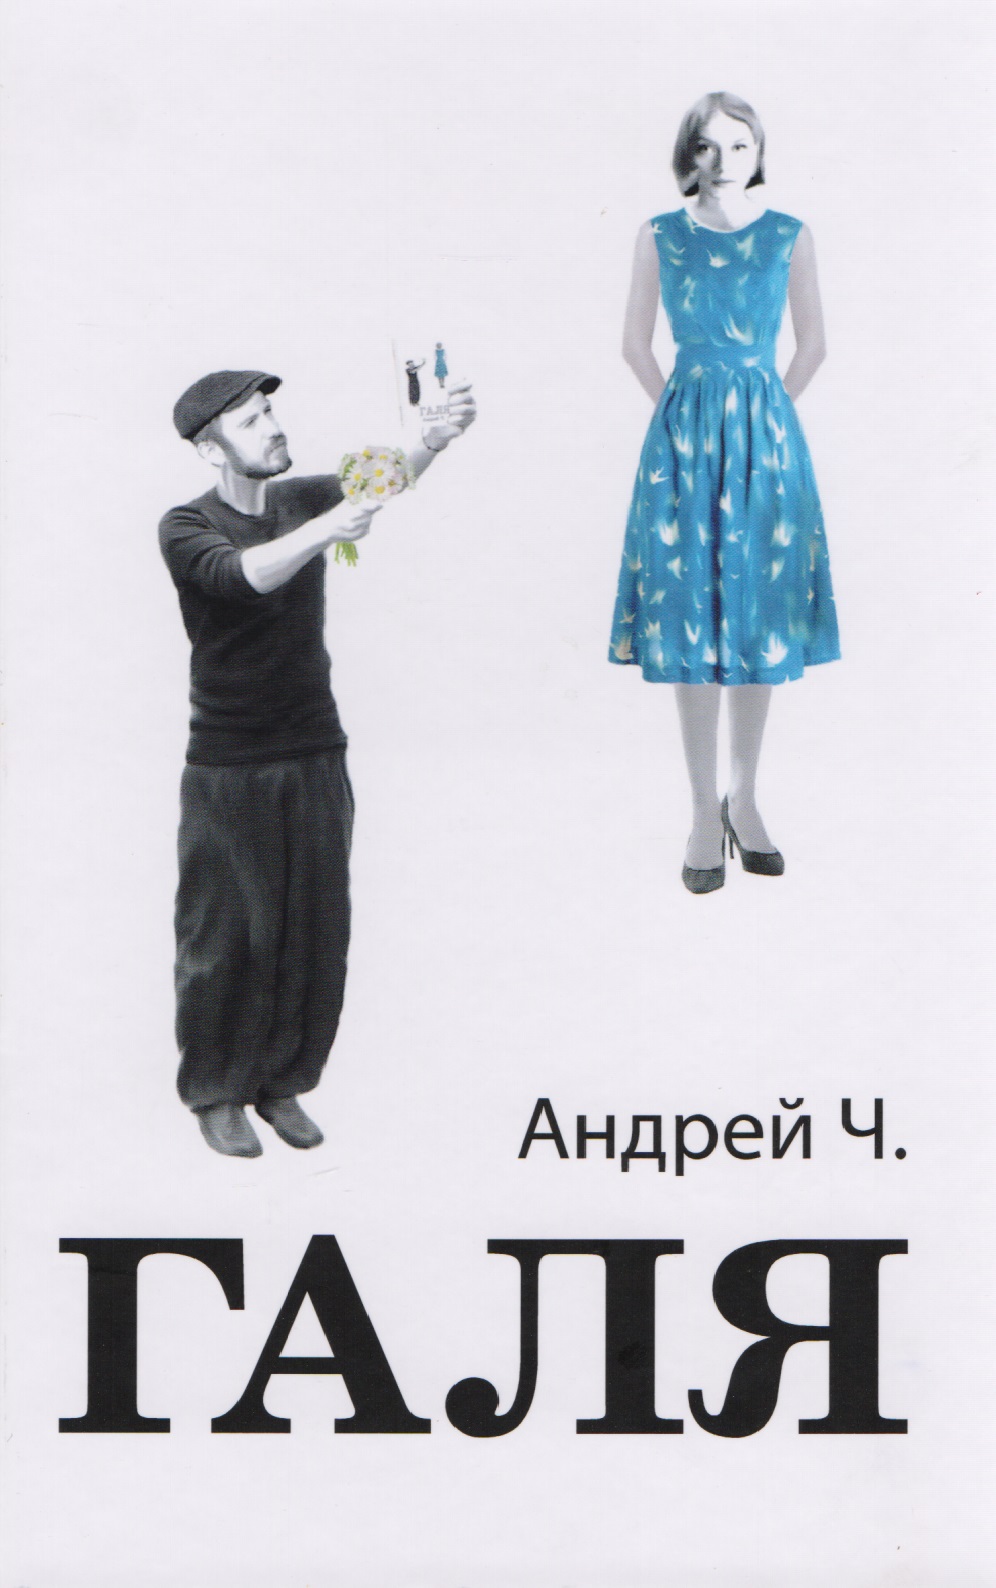 иерей виктор баландин новая жизнь повесть Галя (2 изд) Андрей Ч.